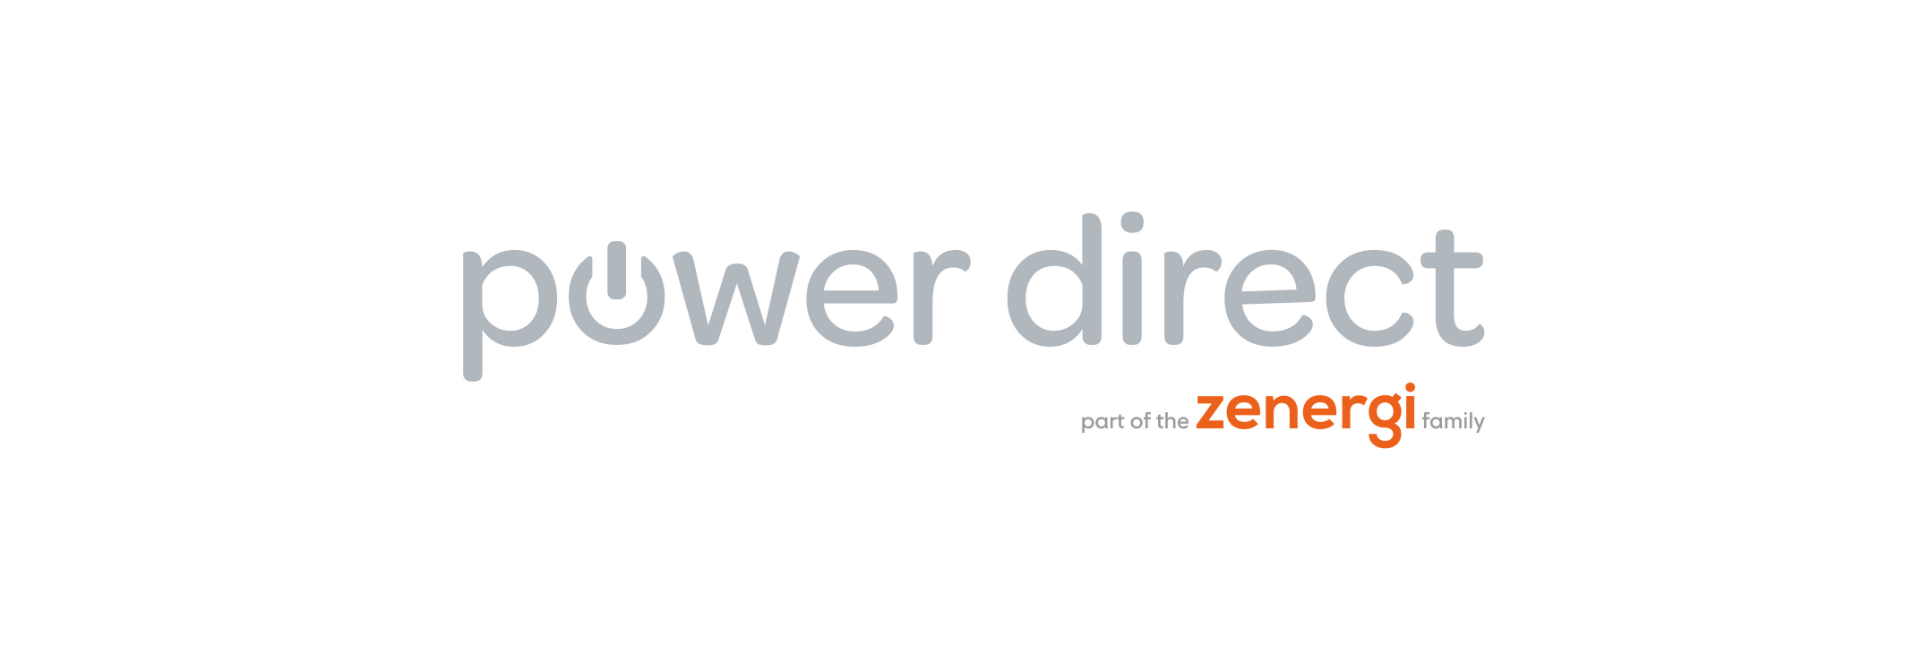 Power Direct Ltd has joined the Zenergi Family